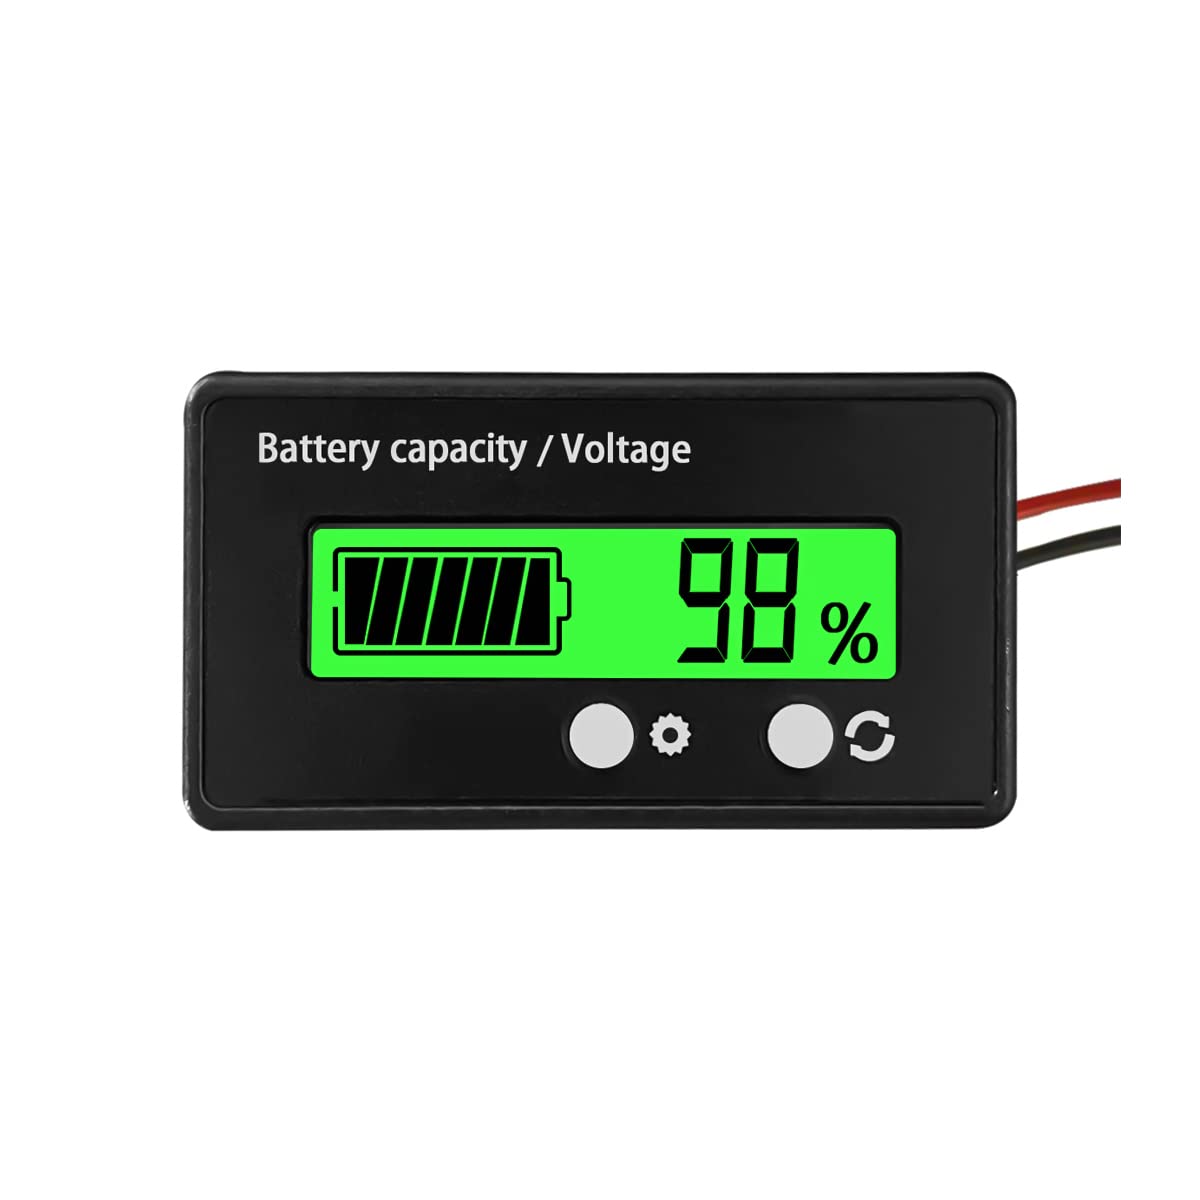 CGEAMDY Batterie Kapazität Voltmeter Monitor,Batteriekapazität Spannung Meter mit Alarm, DC 12V 24V 36V 48V Blei-Säure und Lithium Lon Batterietester(Grün) von CGEAMDY